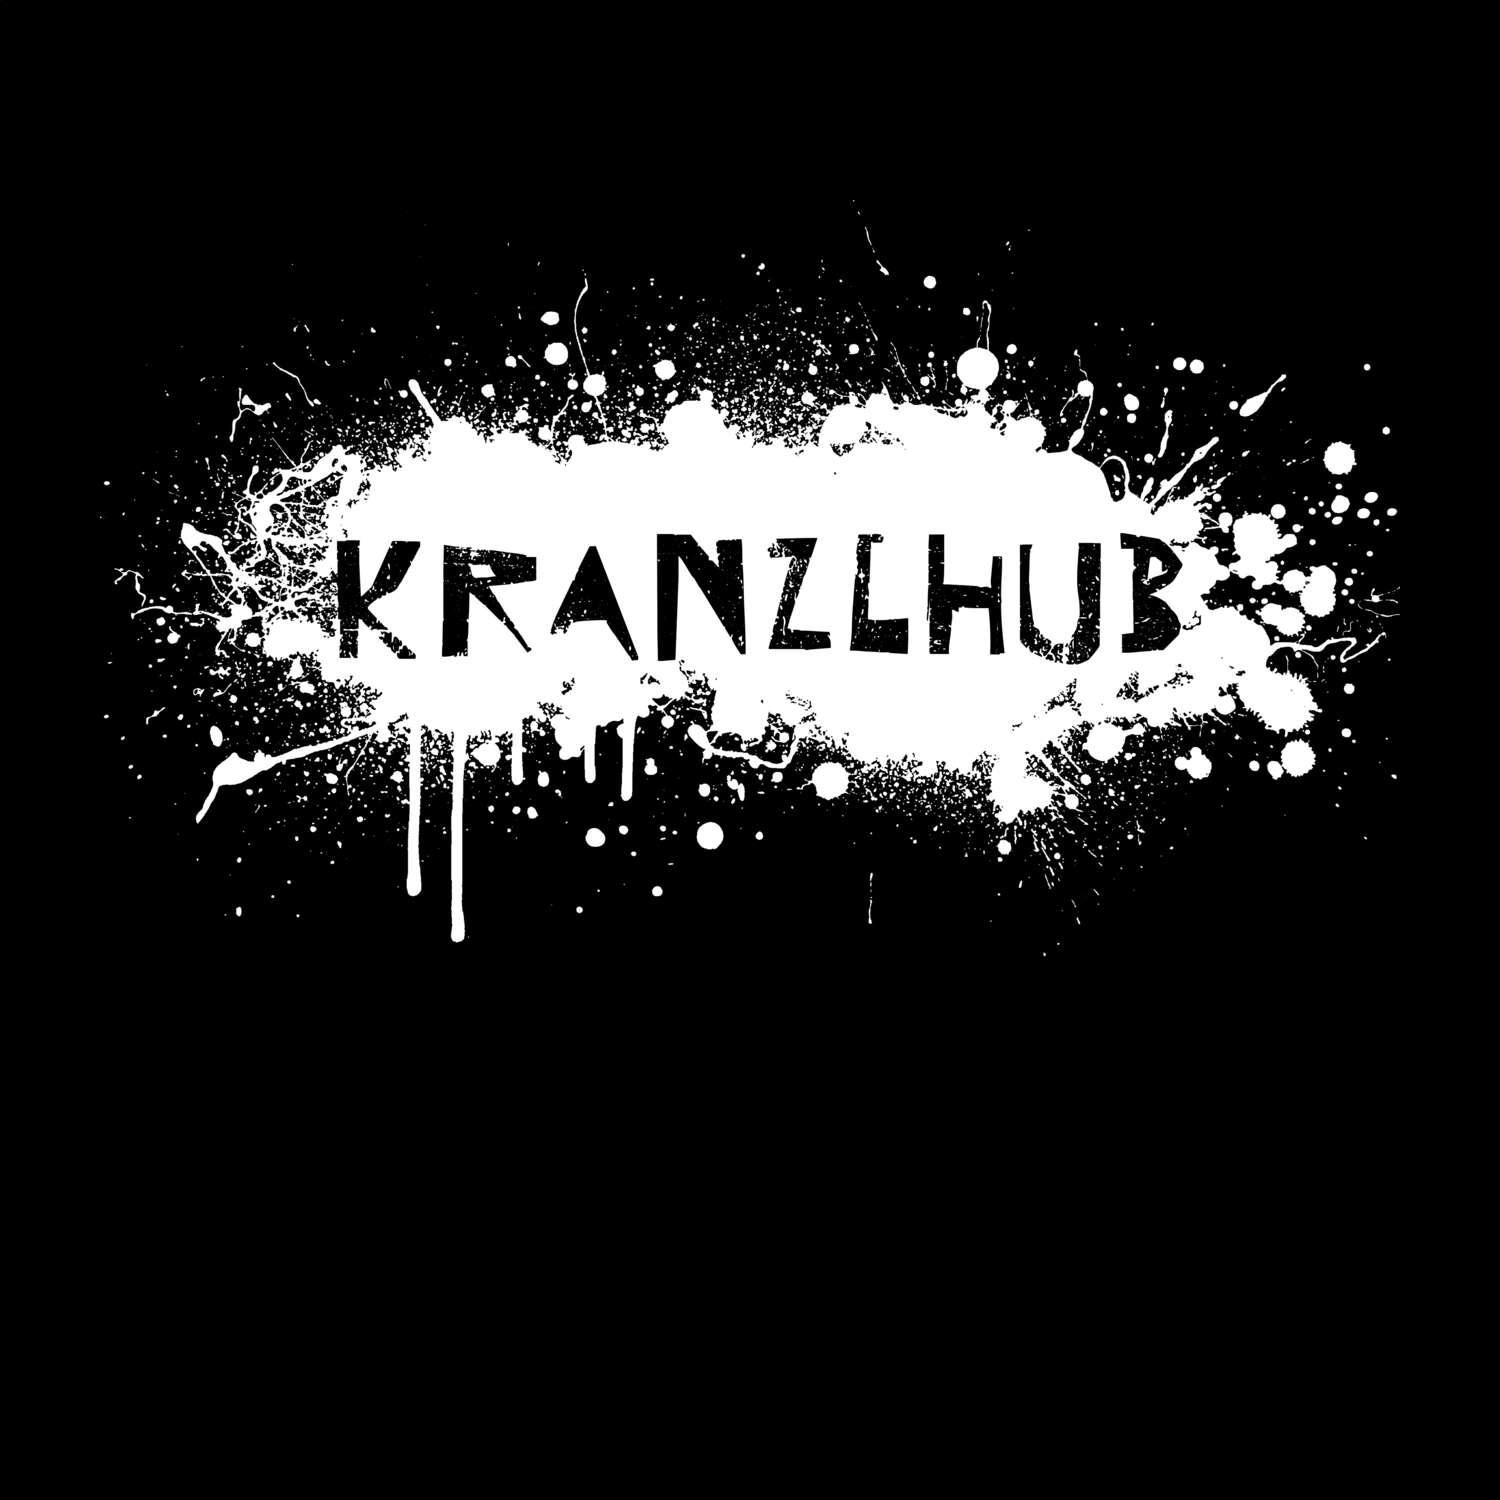 Kranzlhub T-Shirt »Paint Splash Punk«